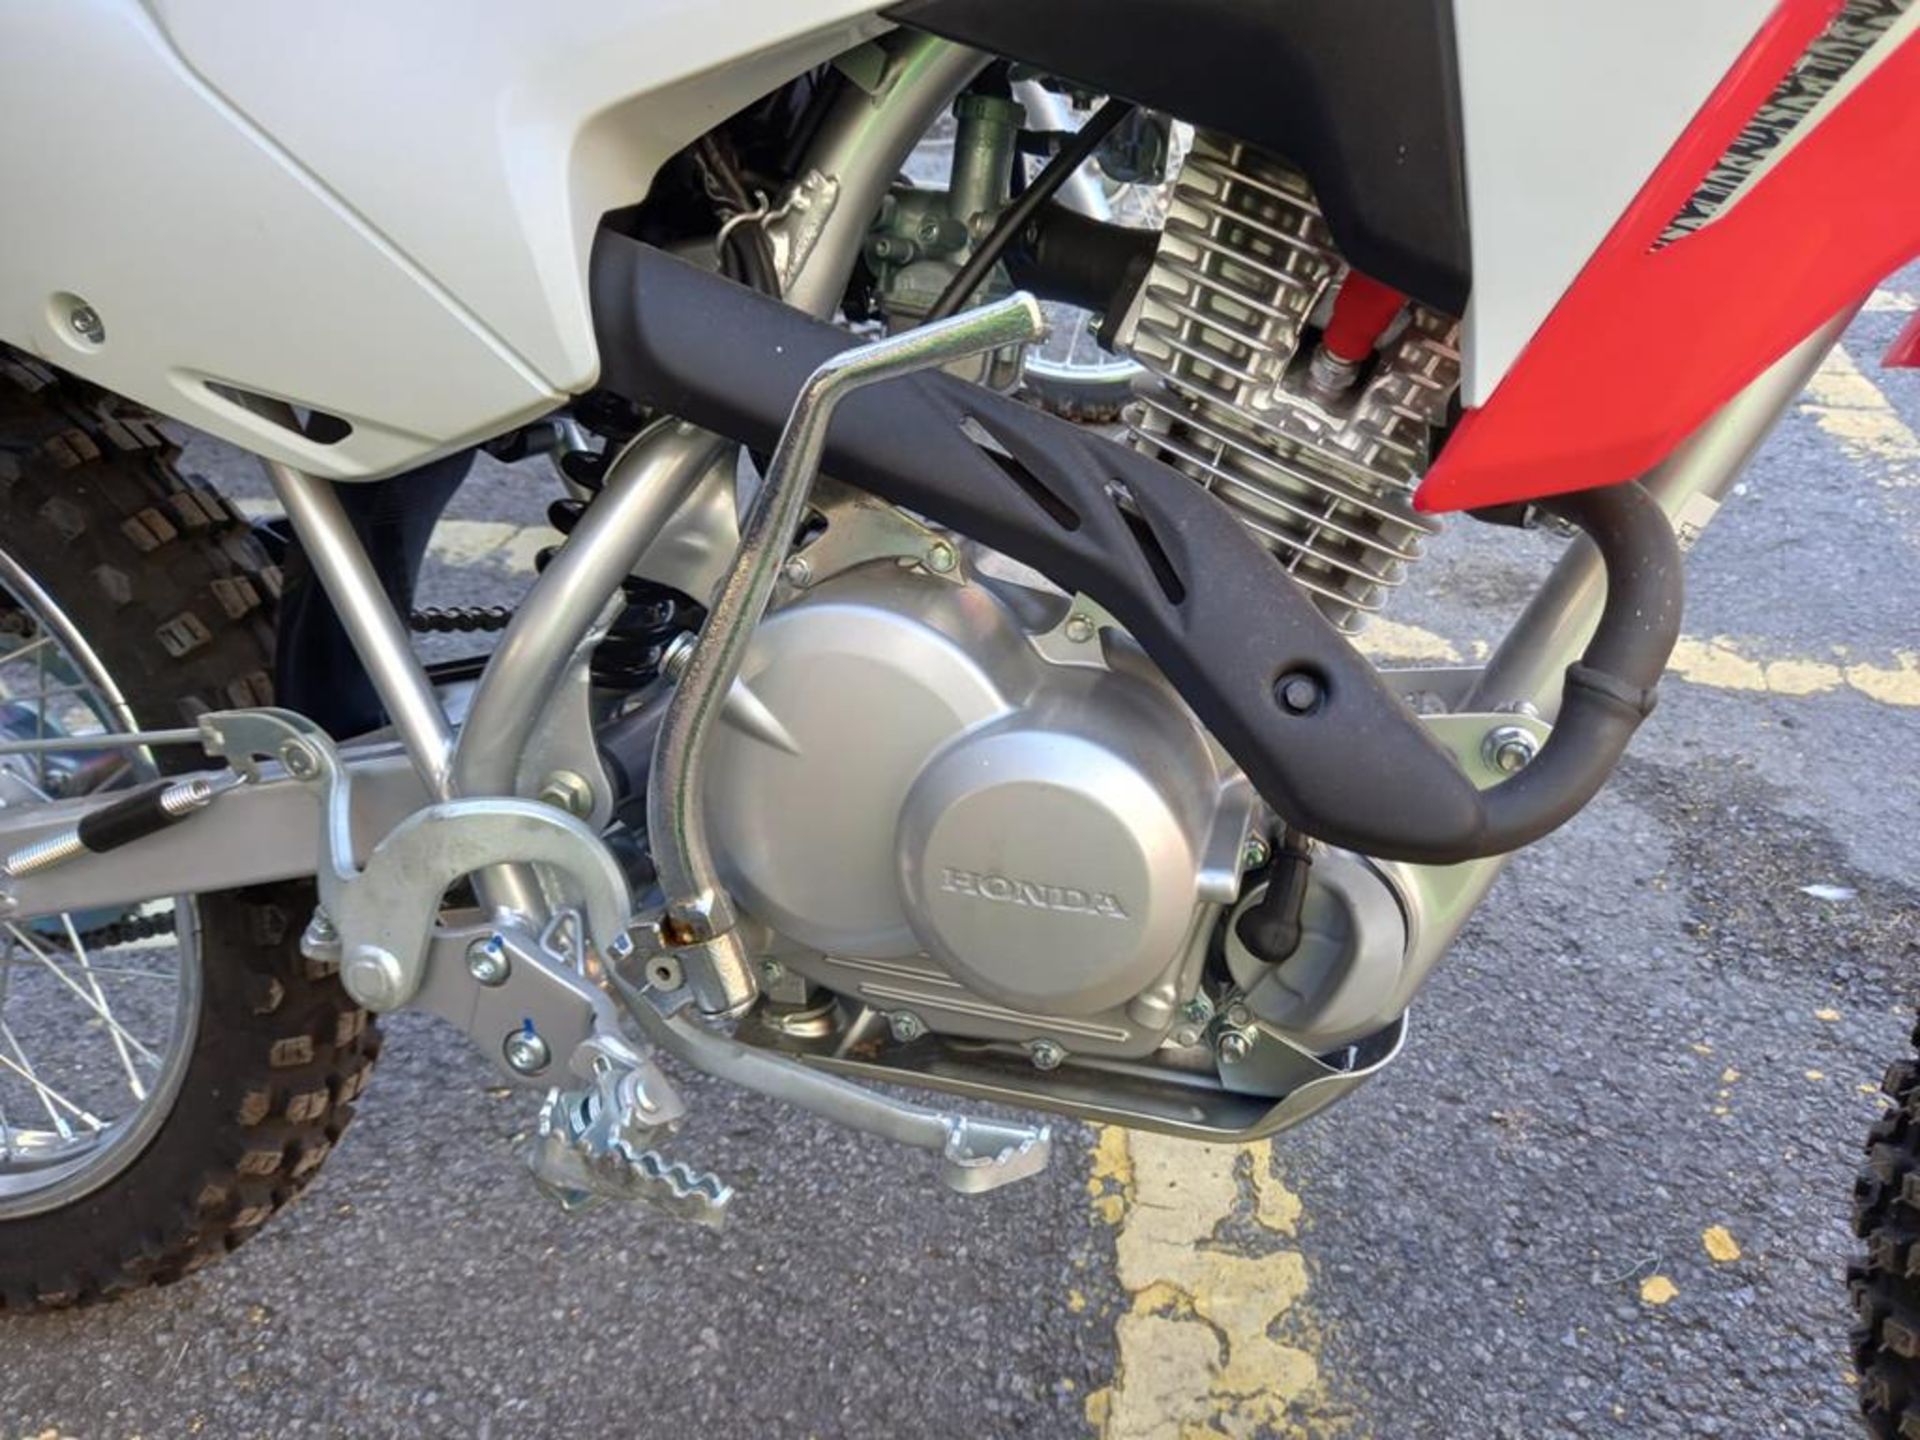 Honda CRF125FB Off Road Motorcycle (virtually unused) - Image 4 of 4